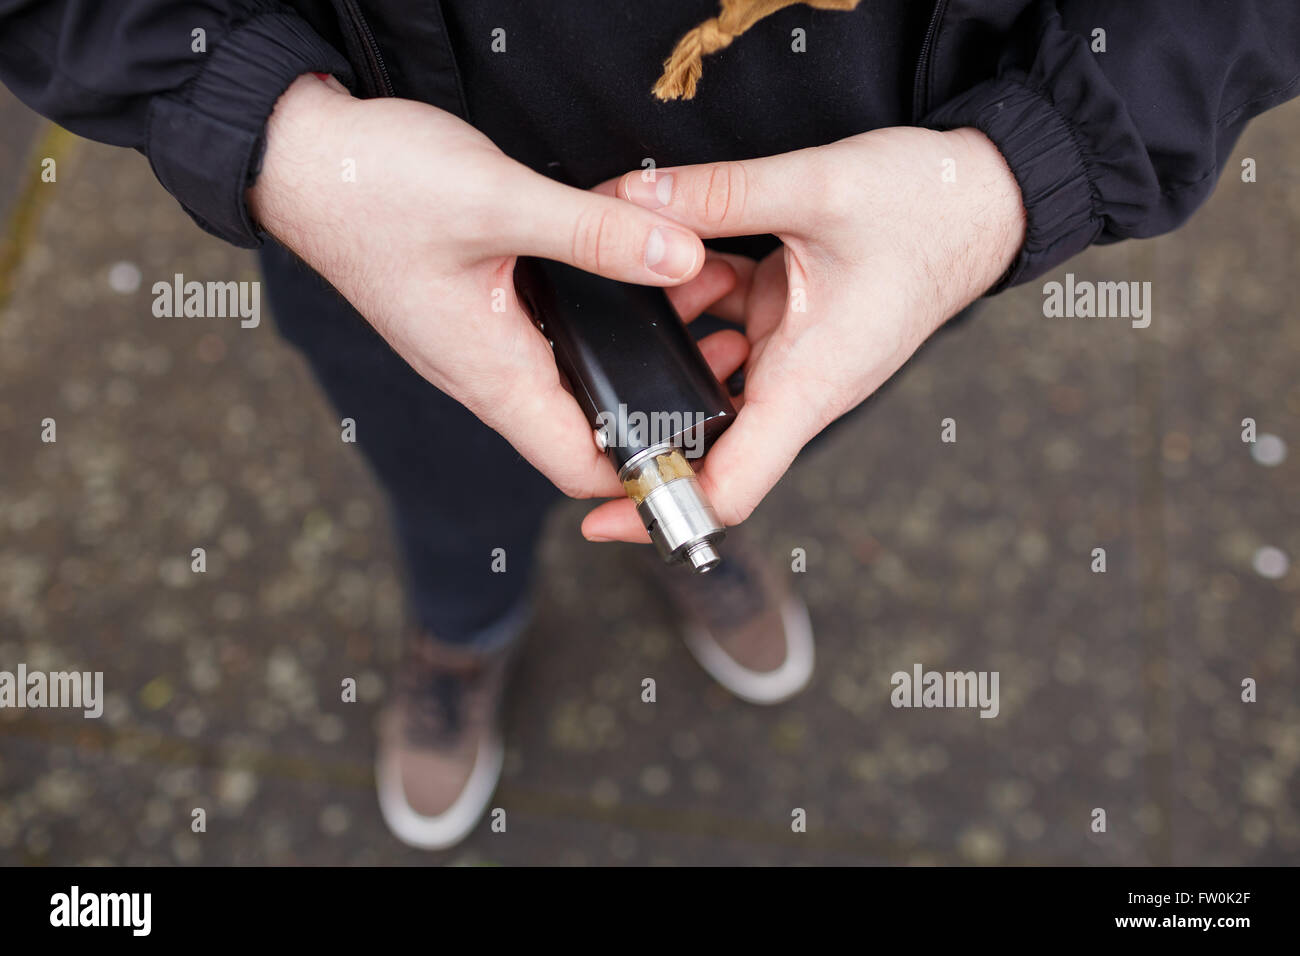 Urbaner Lifestyle Portrait von ein Mann Dampfen in einem städtischen Umfeld mit einem benutzerdefinierten Vape mod Gerät. Stockfoto